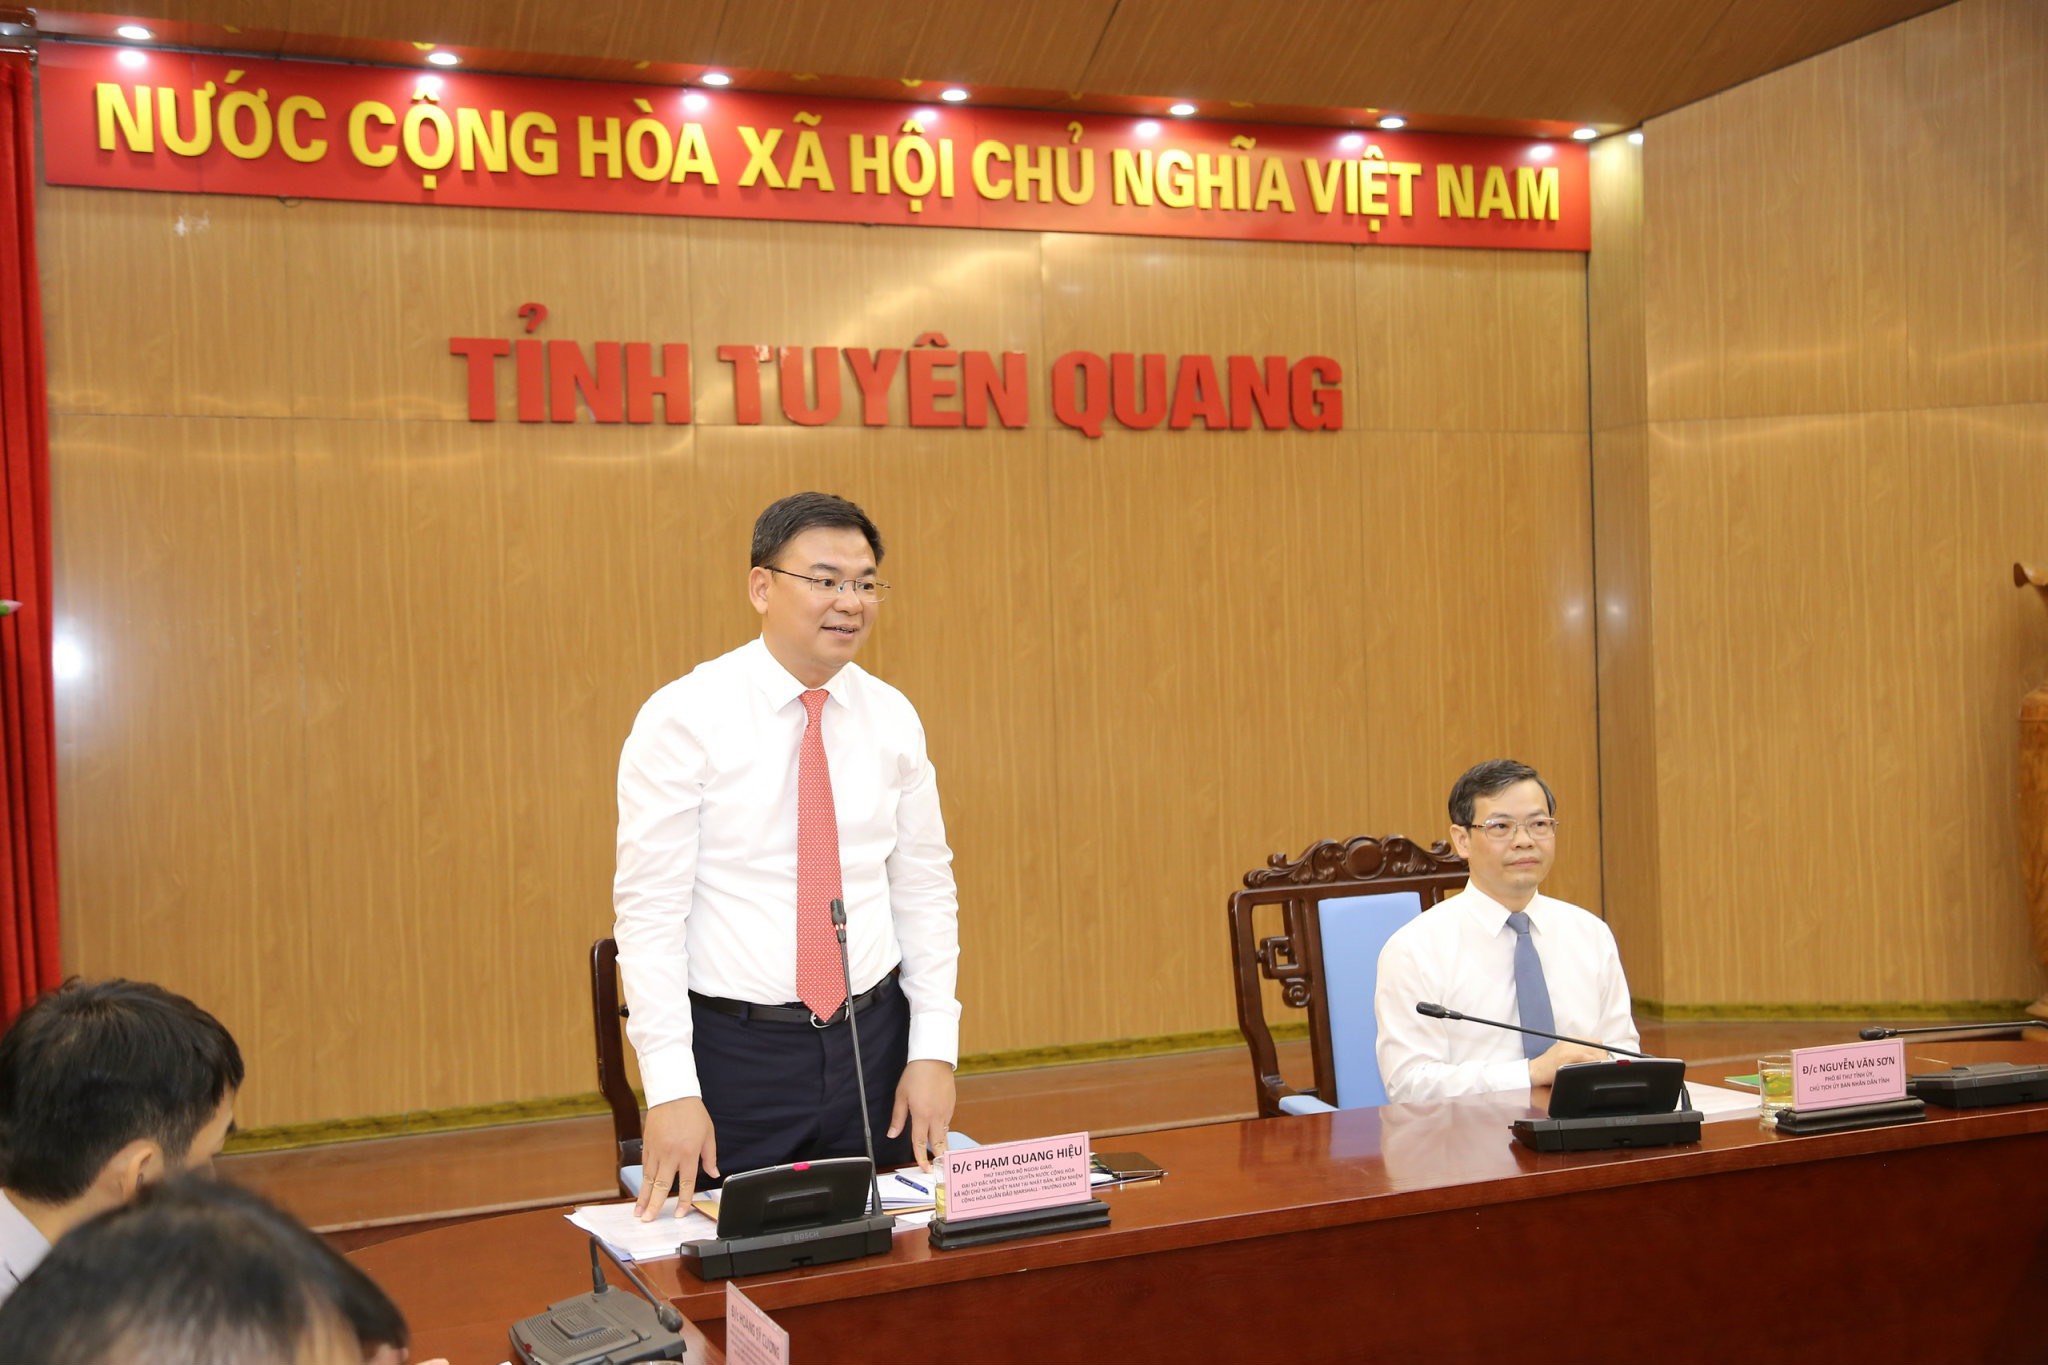 Thứ trưởng Bộ Ngoại giao Phạm Quang Hiệu, Đại sứ Việt Nam tại Nhật Bản phát biểu tại buổi làm việc.